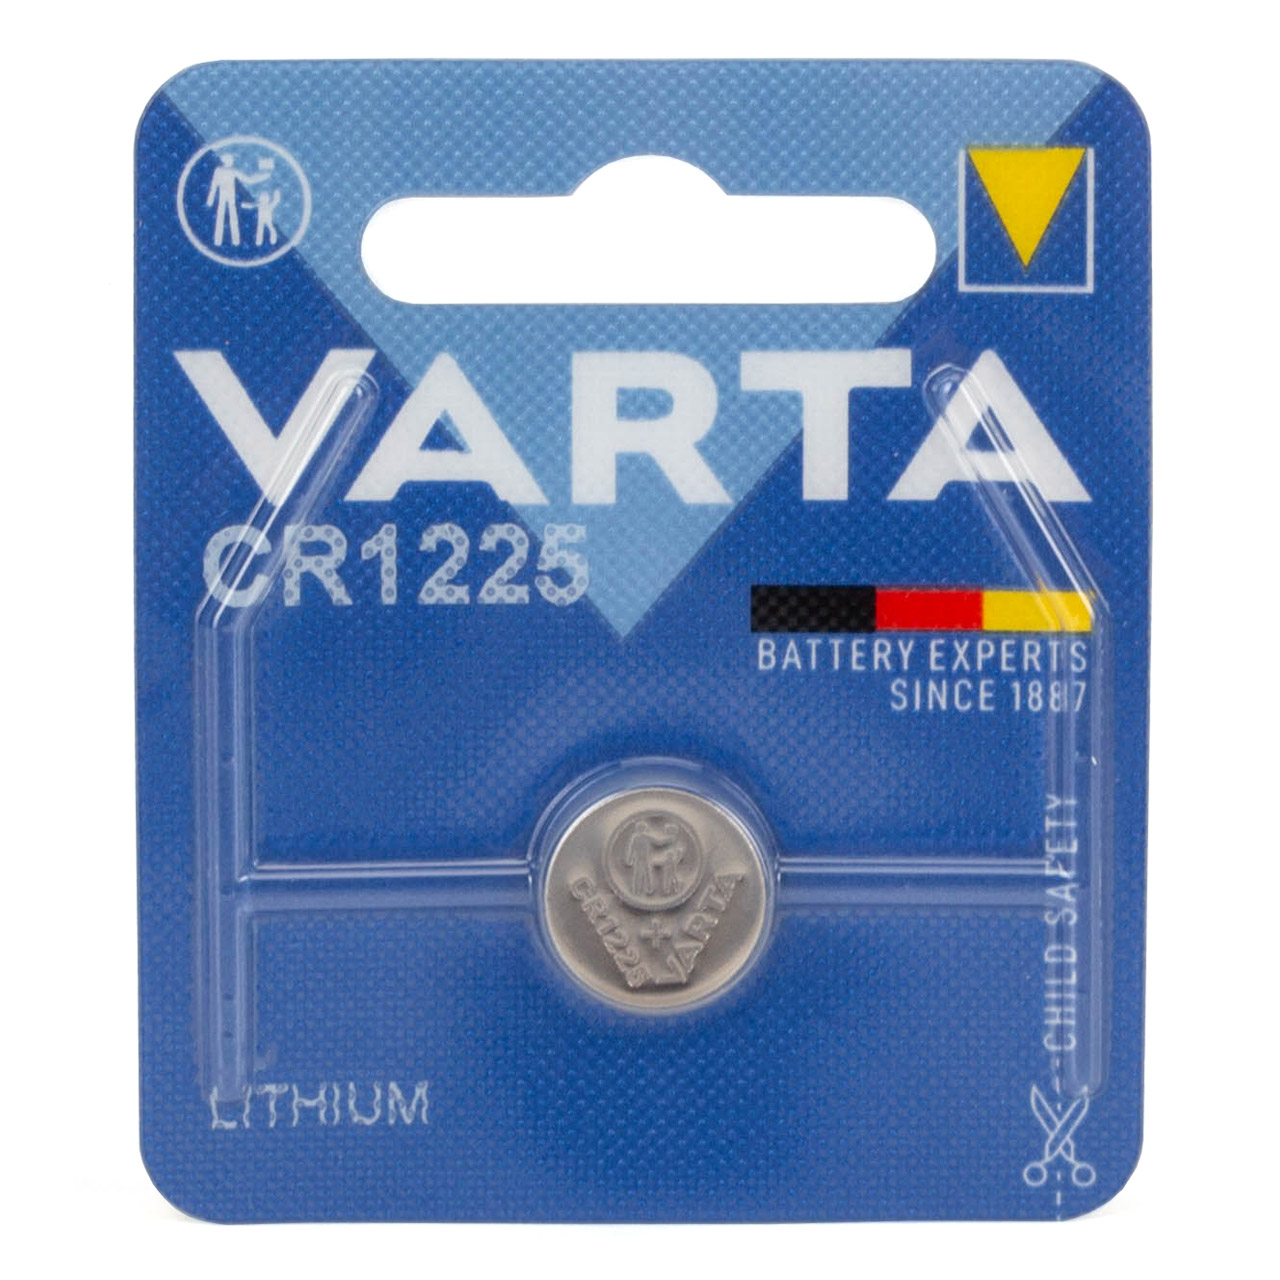 10x VARTA Lithium 3V CR1225 Knopfzelle Knopfbatterie Batterie (MHD 12.2032)